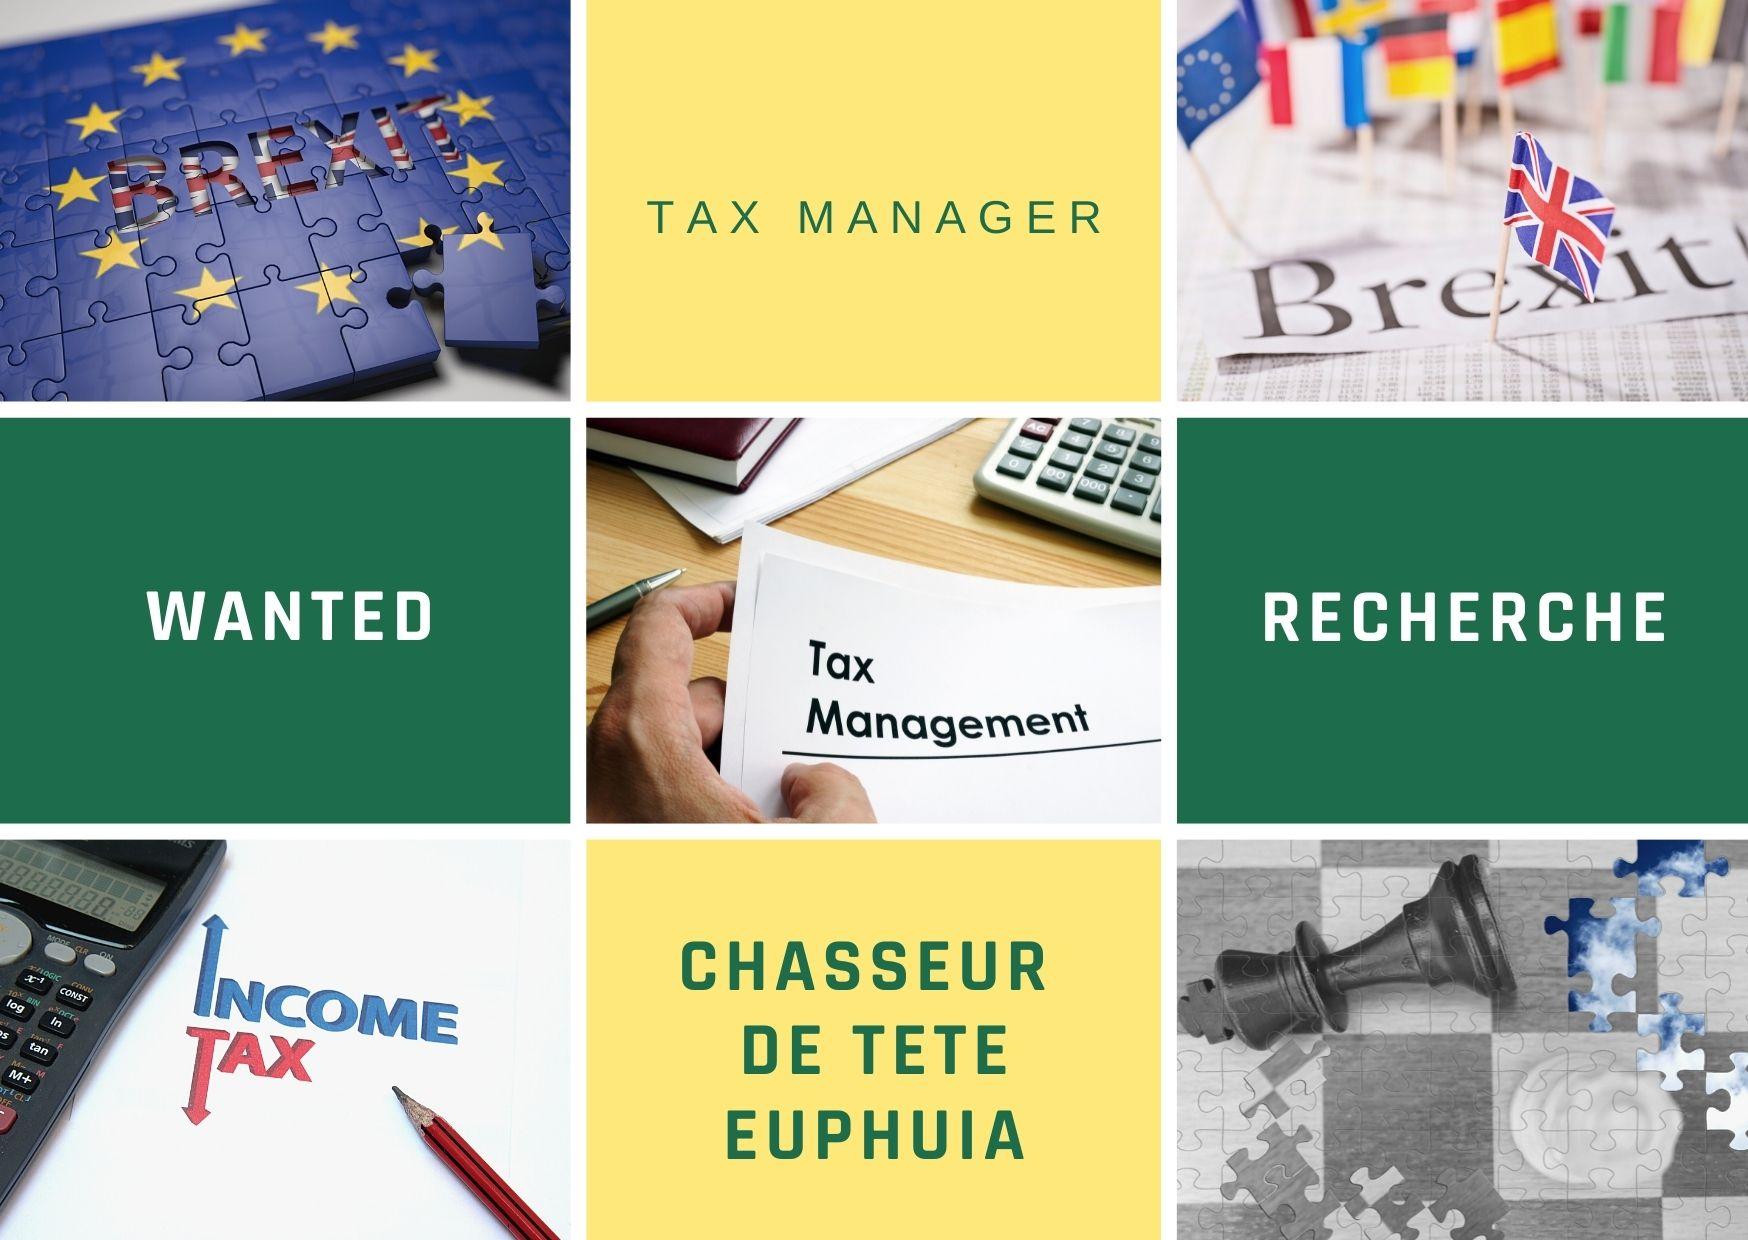 Tax Manager : Wanted par Chasseur de Tete Euphuia